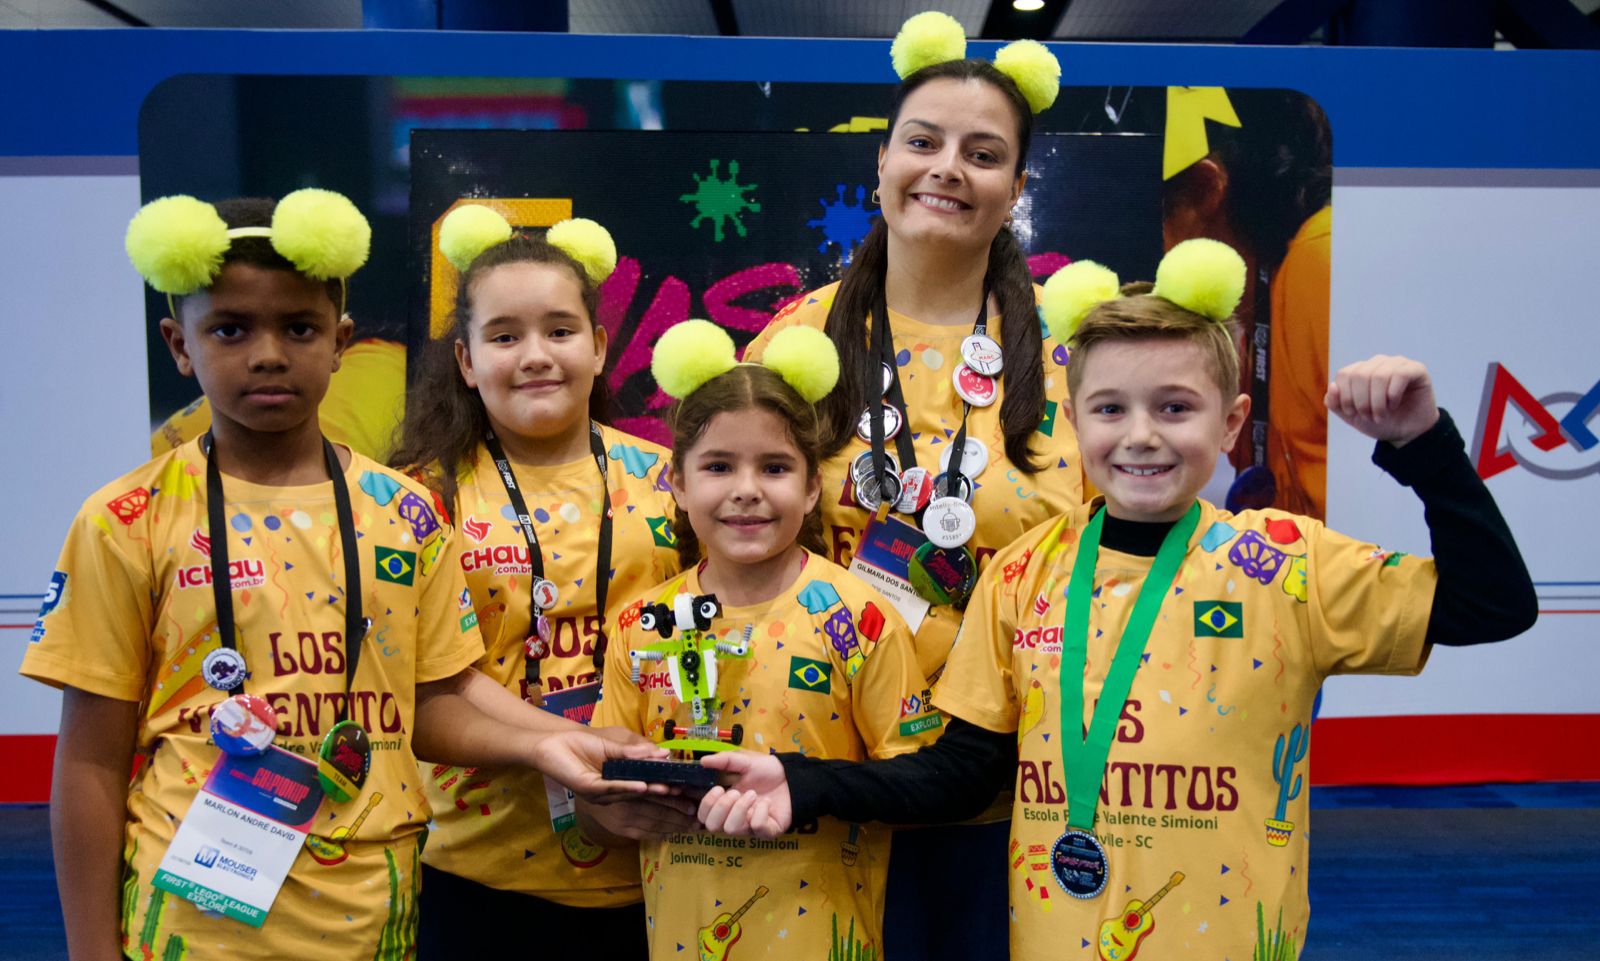 Alunos de Escola Municipal de Joinville conquistam troféu em competição nos Estados Unidos